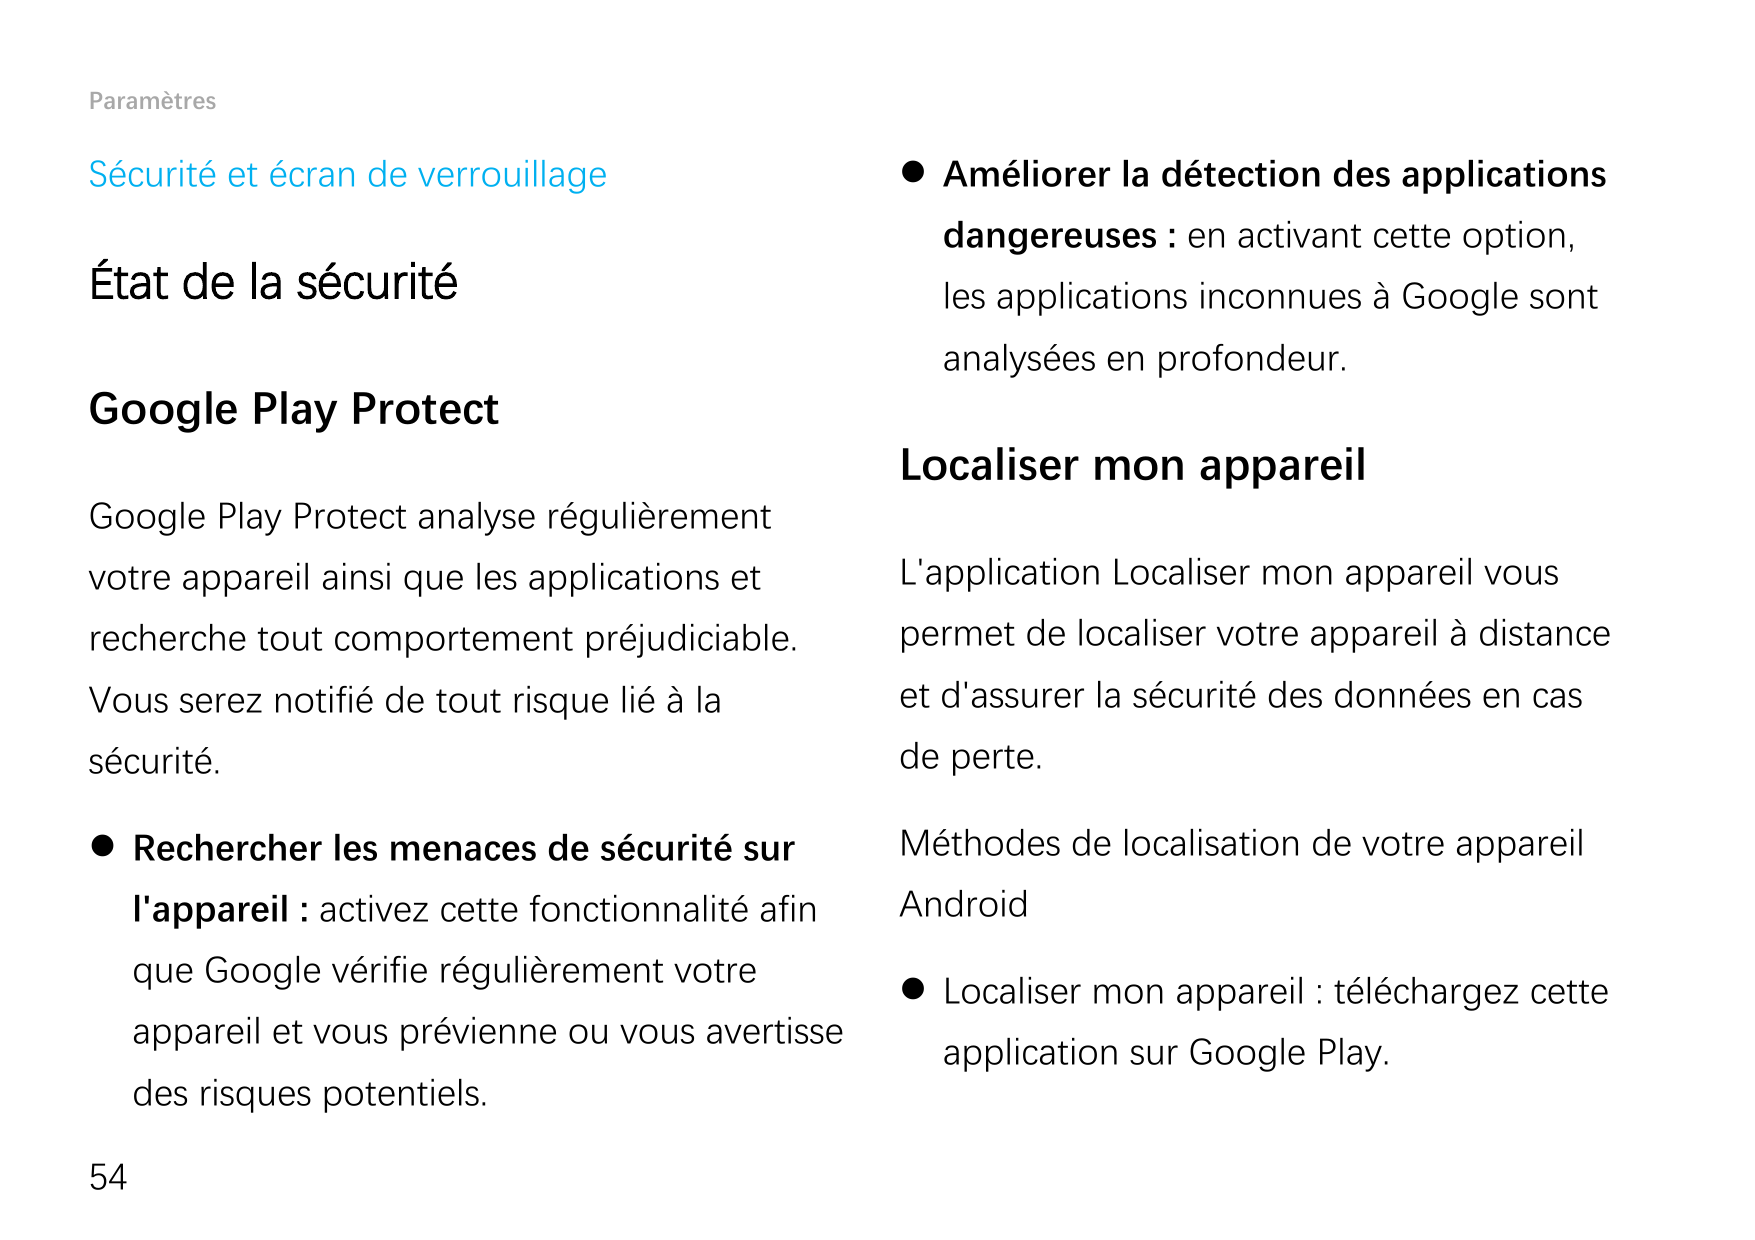 ParamètresSécurité et écran de verrouillageÉtat de la sécuritéGoogle Play Protect Améliorer la détection des applicationsdanger